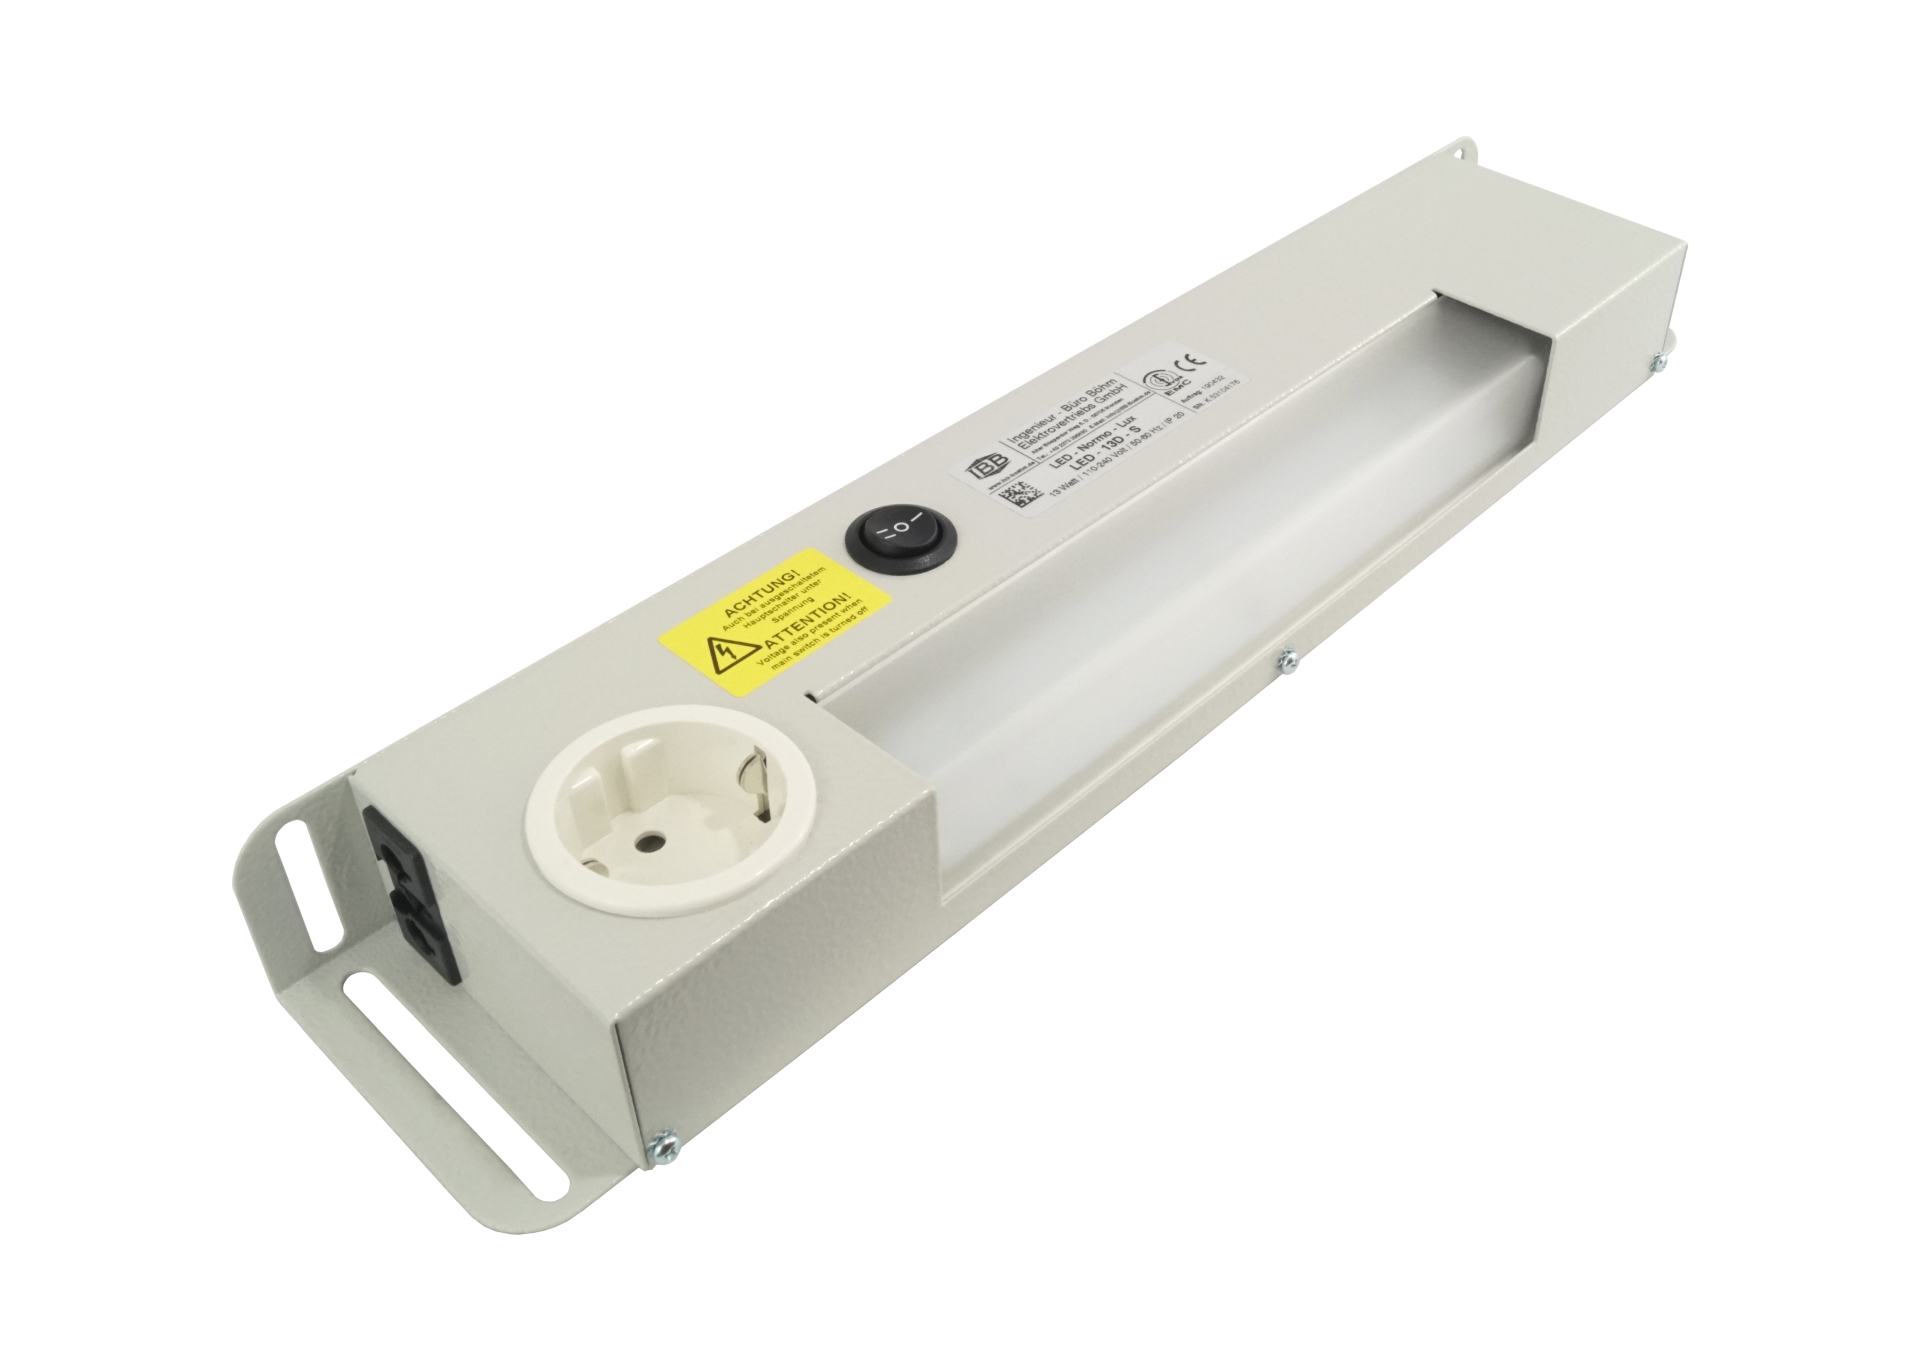 Abbildung LED Schaltschrankleuchte LED-Normo-Lux 13 Watt | Betriebsspannung: 110-240 Volt, 50-60 Hz, für steckbaren Schalter